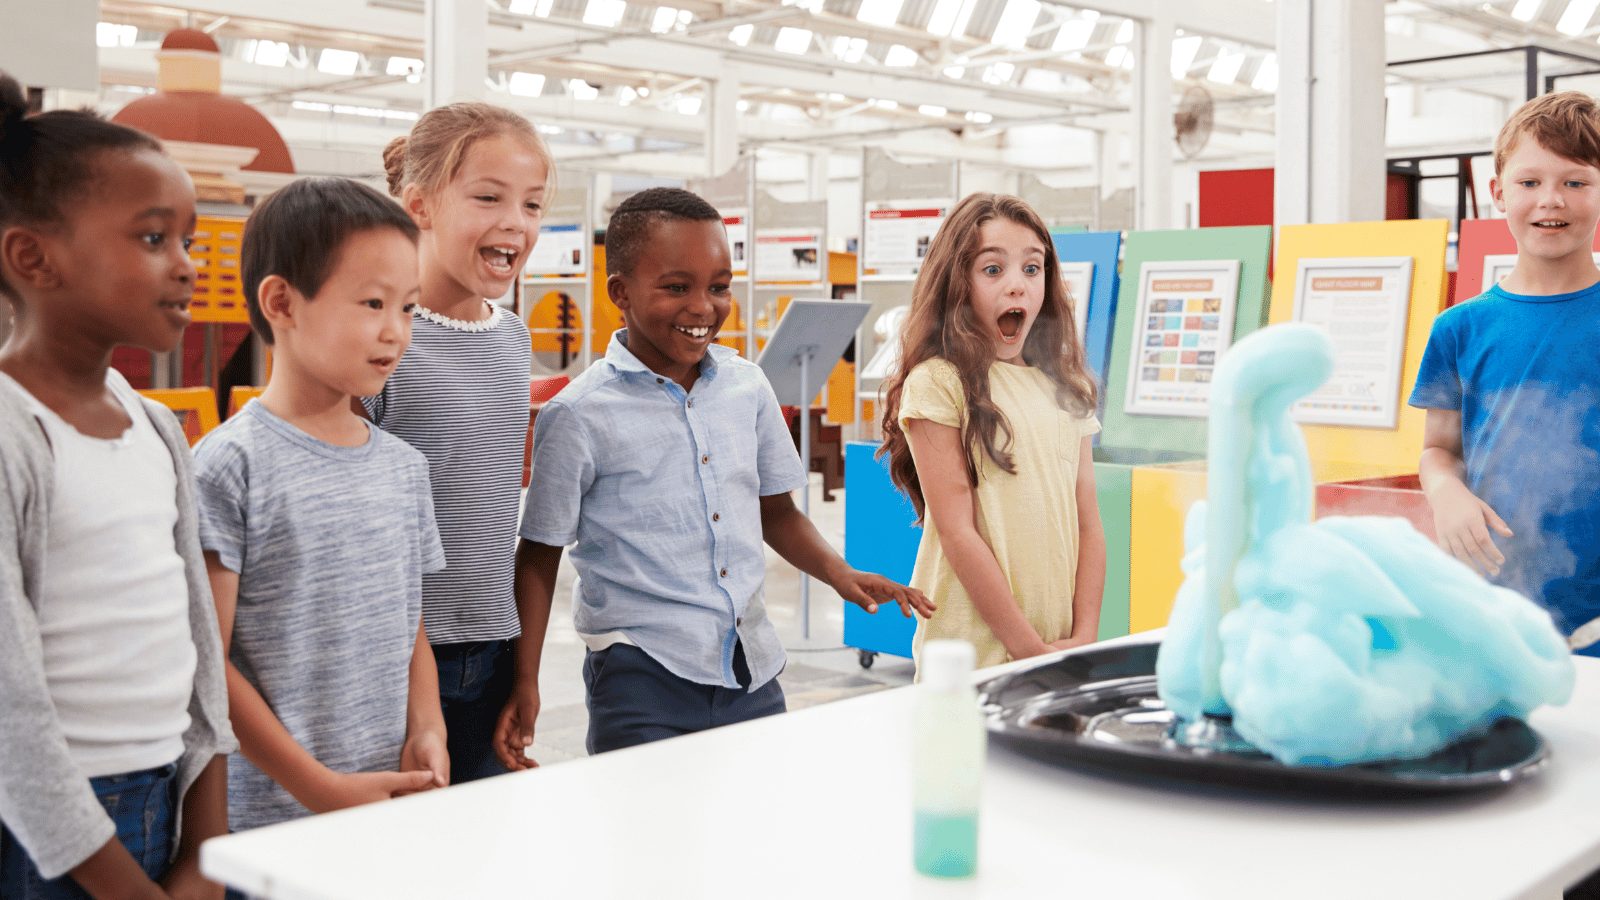 20 Easy Science Activities for Preschoolers